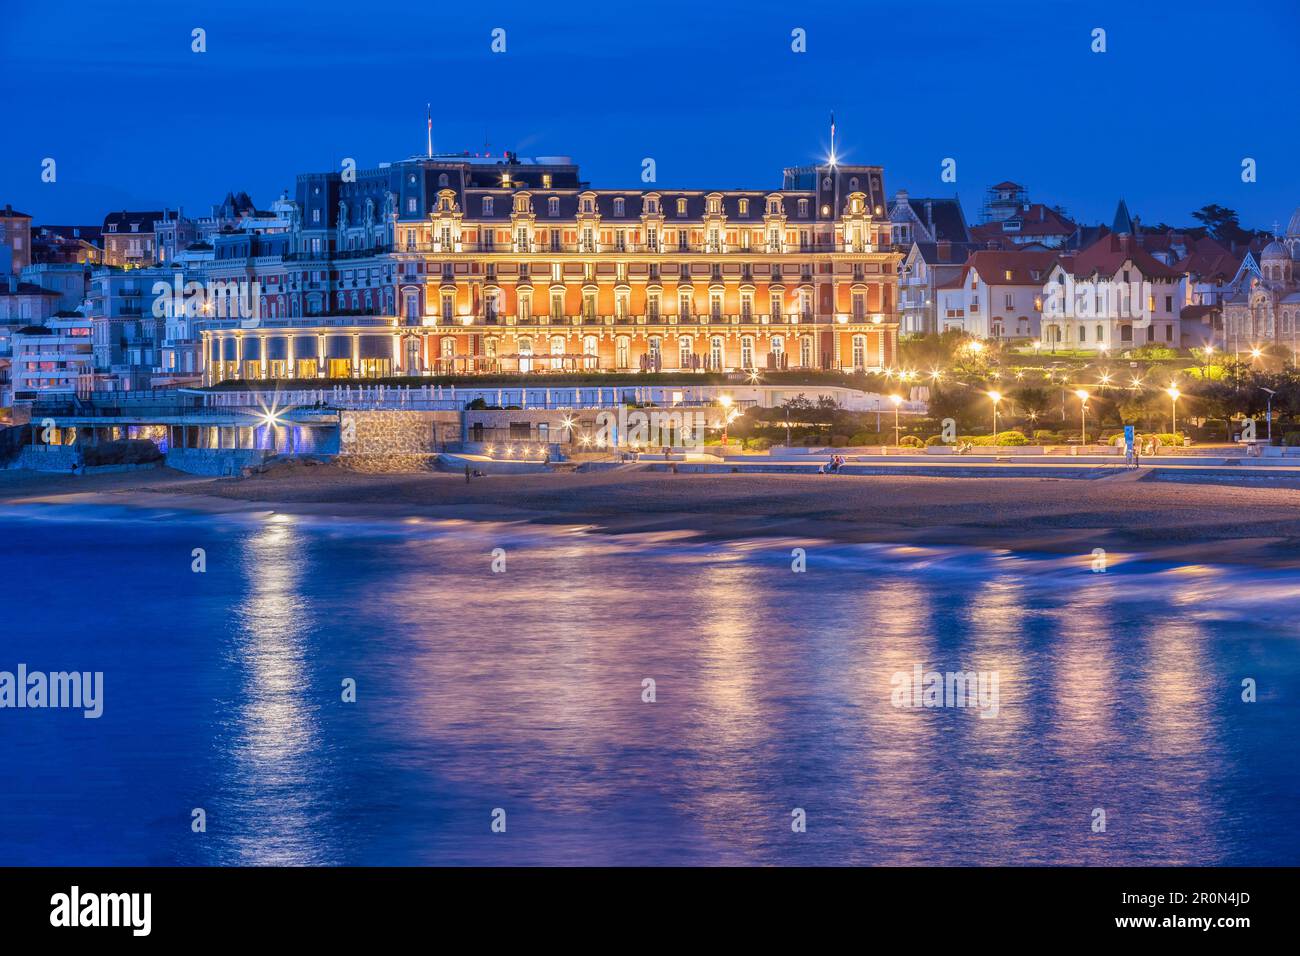 Hôtel du Palais, Biarritz, pays basque français, France de nuit Banque D'Images